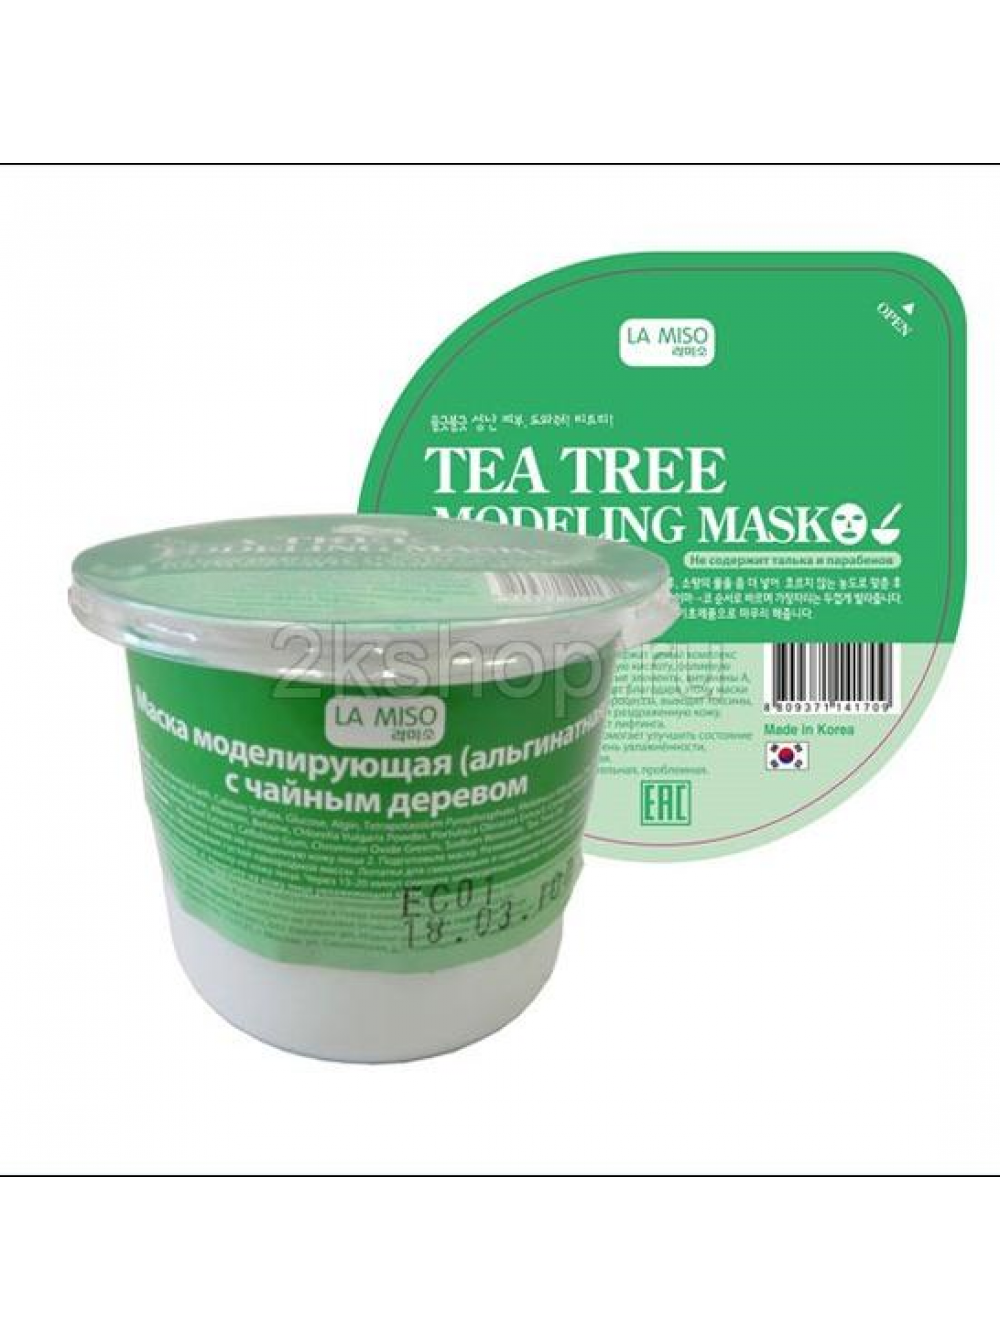 Альгинатная маска miso. La Miso альгинатная маска моделирующая с чайным деревом, 28 г. La Miso маска альгинатная с чайным деревом - Tea Tree Modeling Mask, 28г. Ла мисо альгинатная маска. Альгиновая маска для лица.